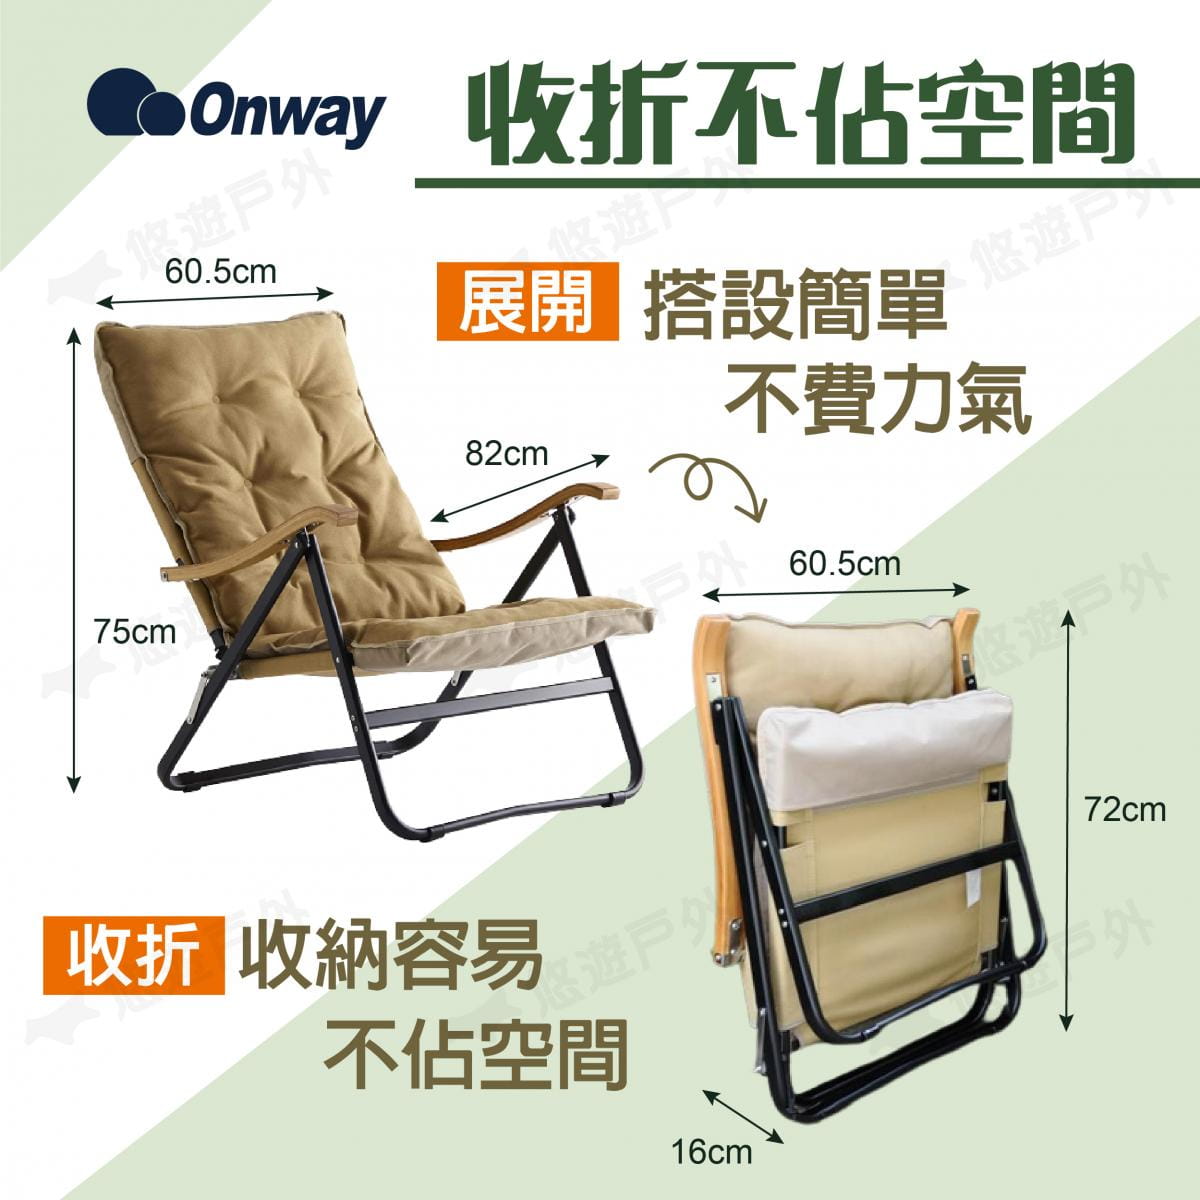 【ONWAY】舒適木質扶手低椅升級版 OW-61BD-BMPLUS (悠遊戶外) 1